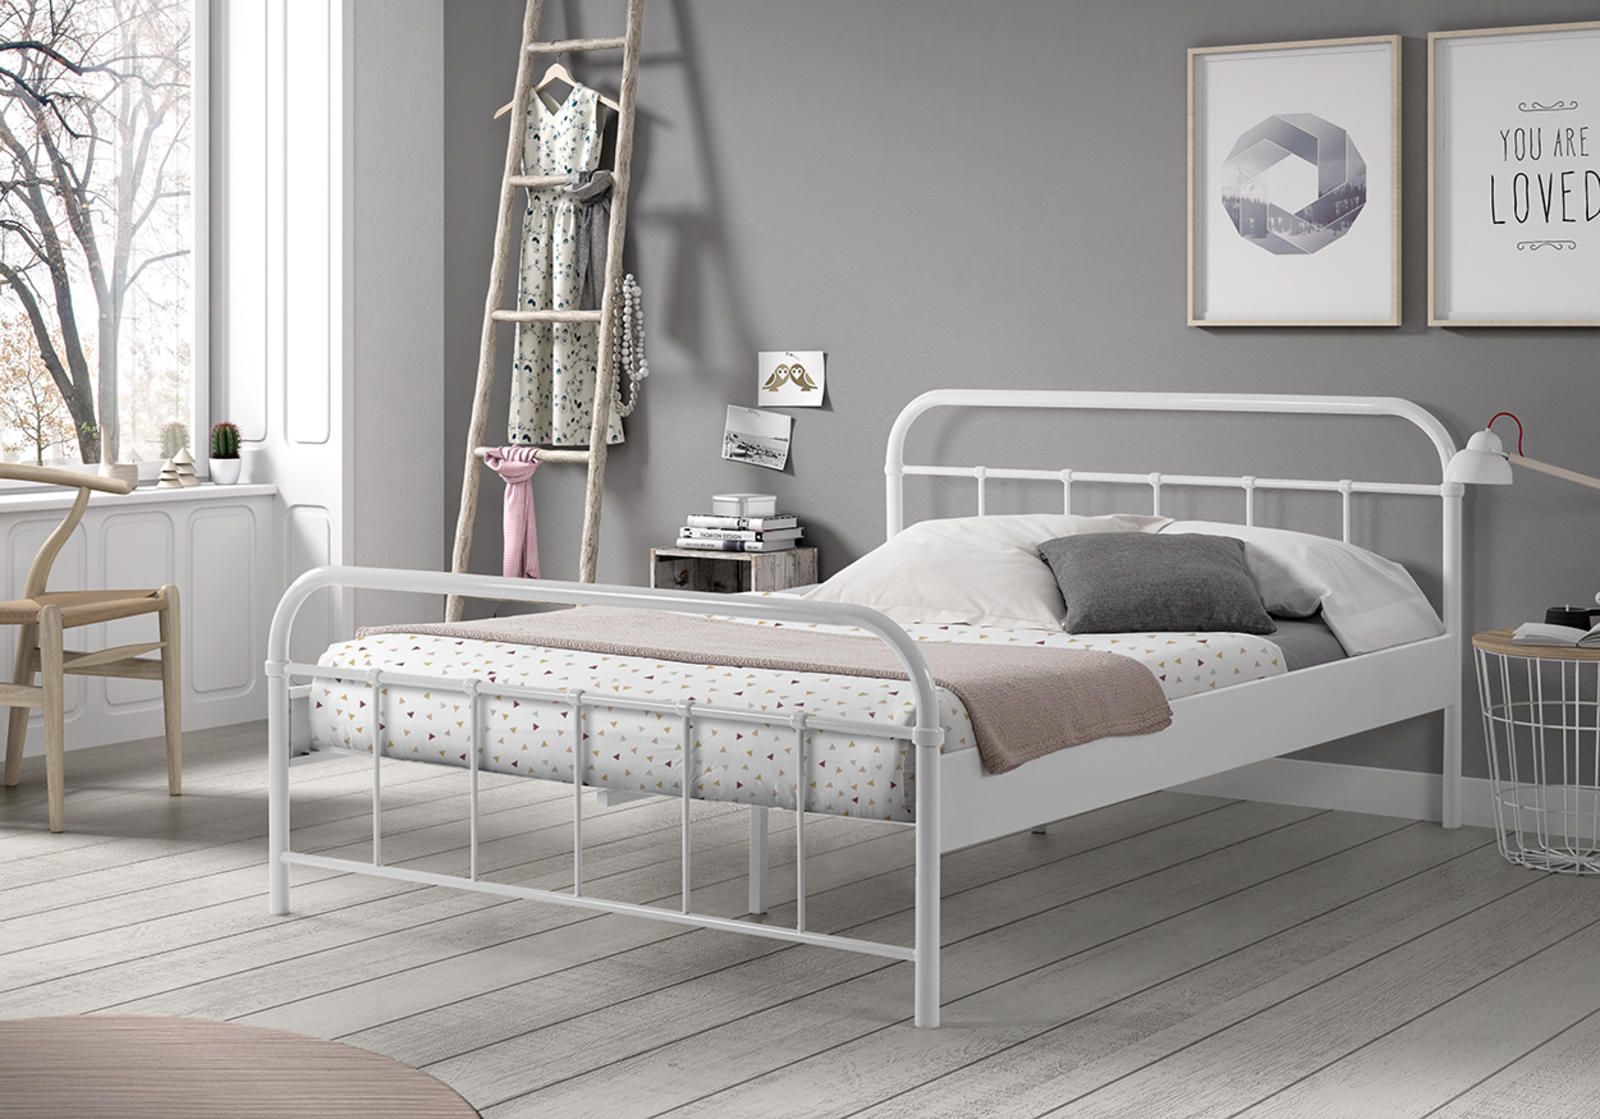 Aldo Kovová postel Boston bílá 140x200 cm - Nábytek ALDO